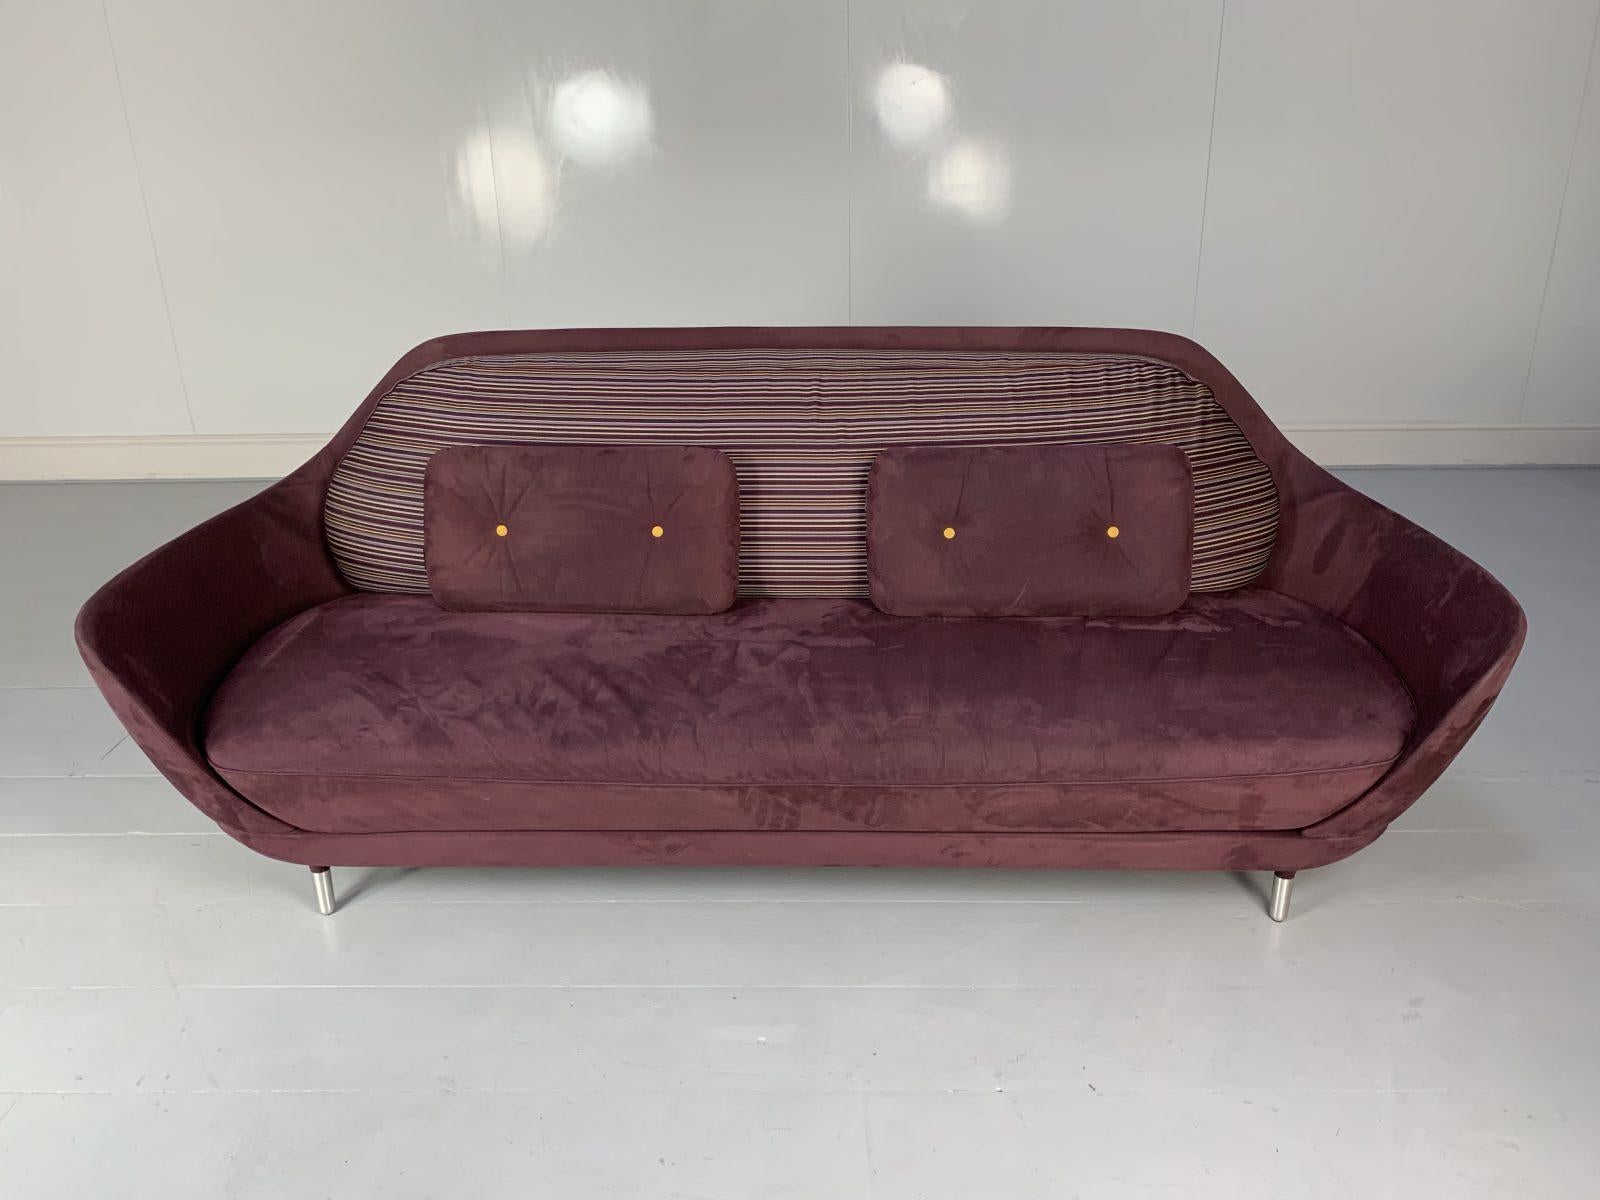 Bonjour les amis, et bienvenue à une nouvelle offre incontournable de Lord Browns Furniture, la première source de canapés et de chaises de qualité au Royaume-Uni.

Nous vous proposons un rare exemple du canapé emblématique 